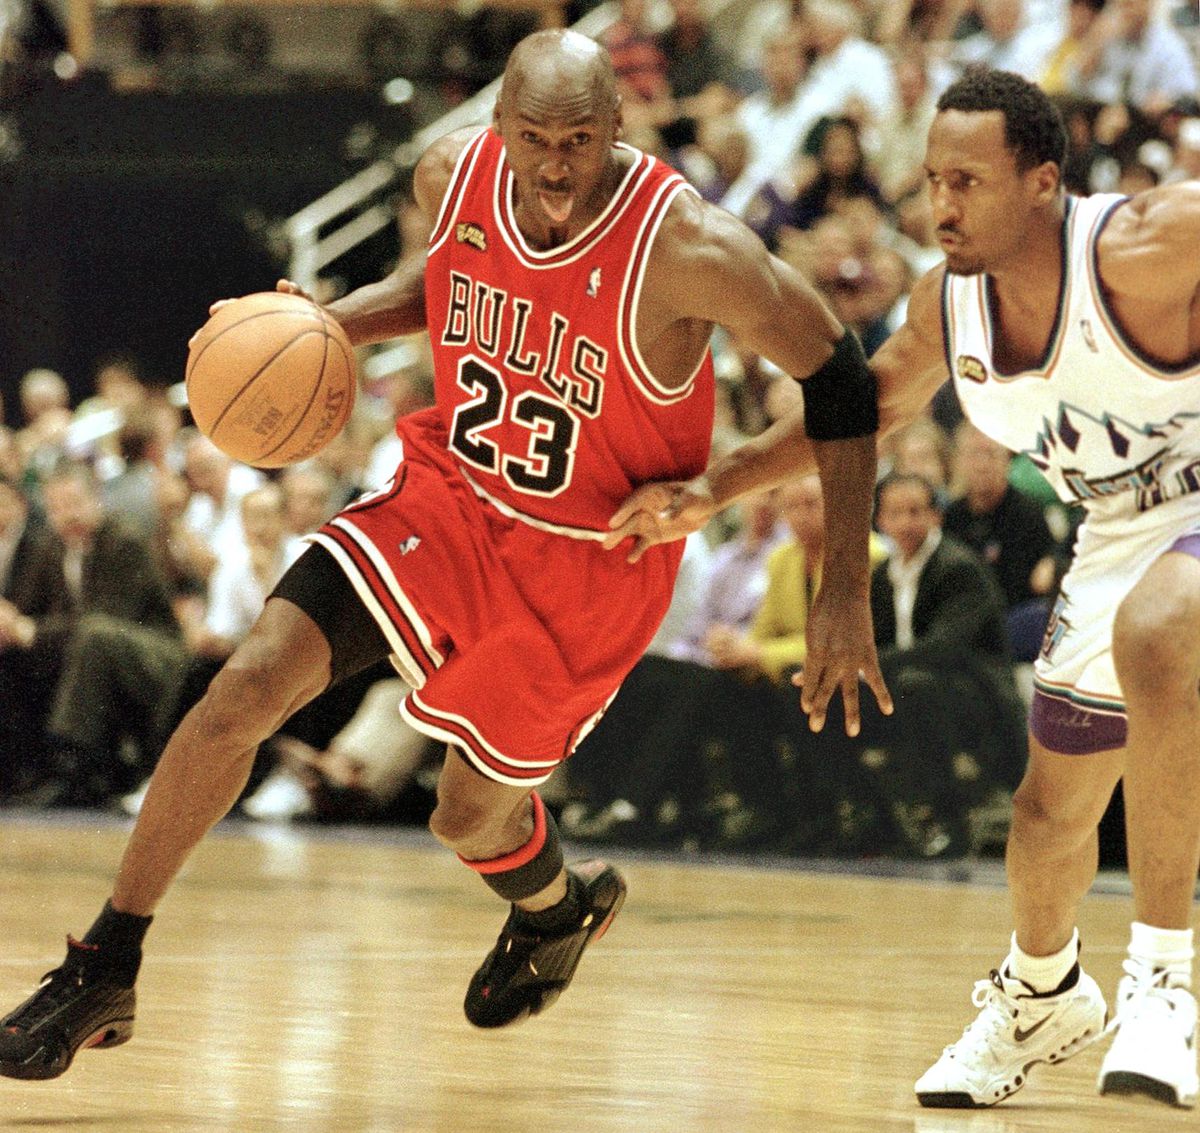 NBA star Michael Jordan pictured in his Air Jordan gym shoes.